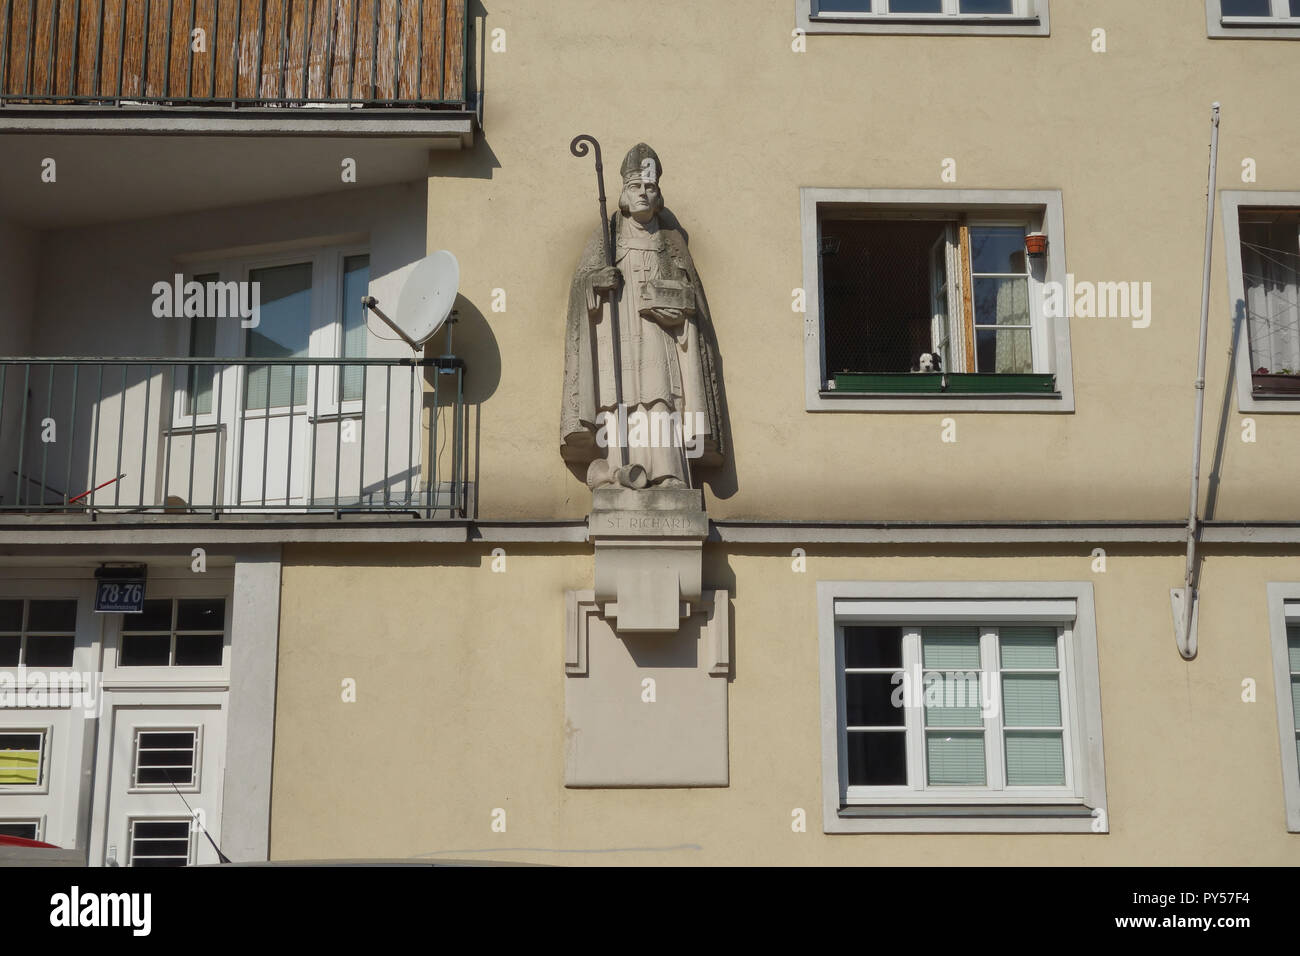 Wien, Gemeindebau der Zwischenkriegszeit, ehemaliges Familienasyl St. Richard, Einsiedlergasse 9–11, Johann Stöhr Stock Photo